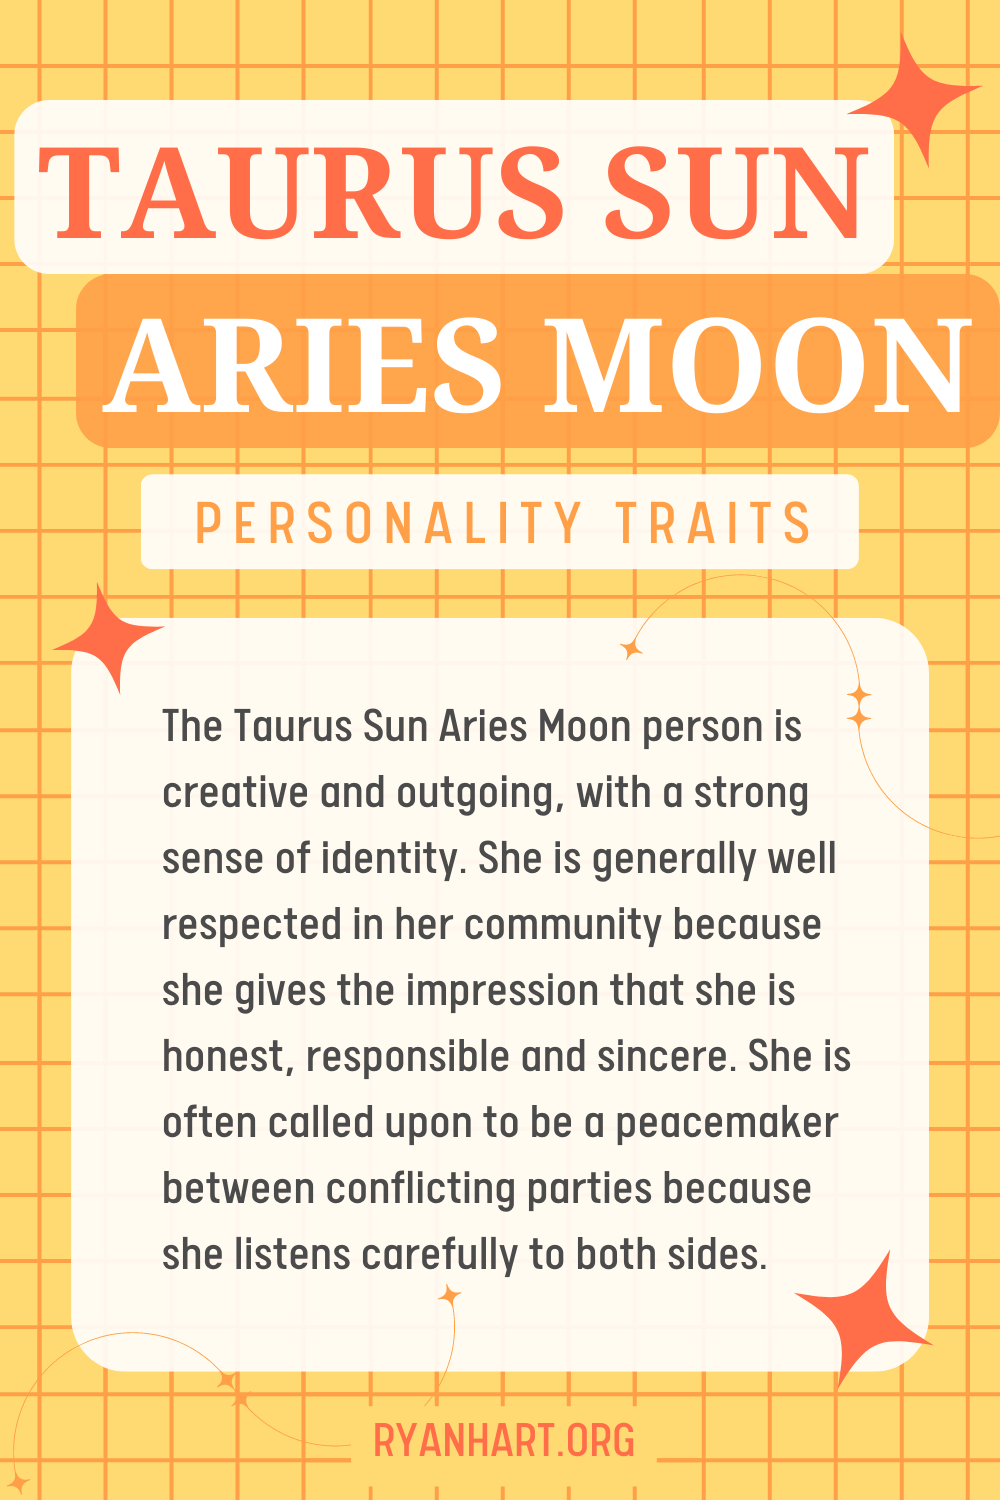 Taurus Sun Aries Moon Description